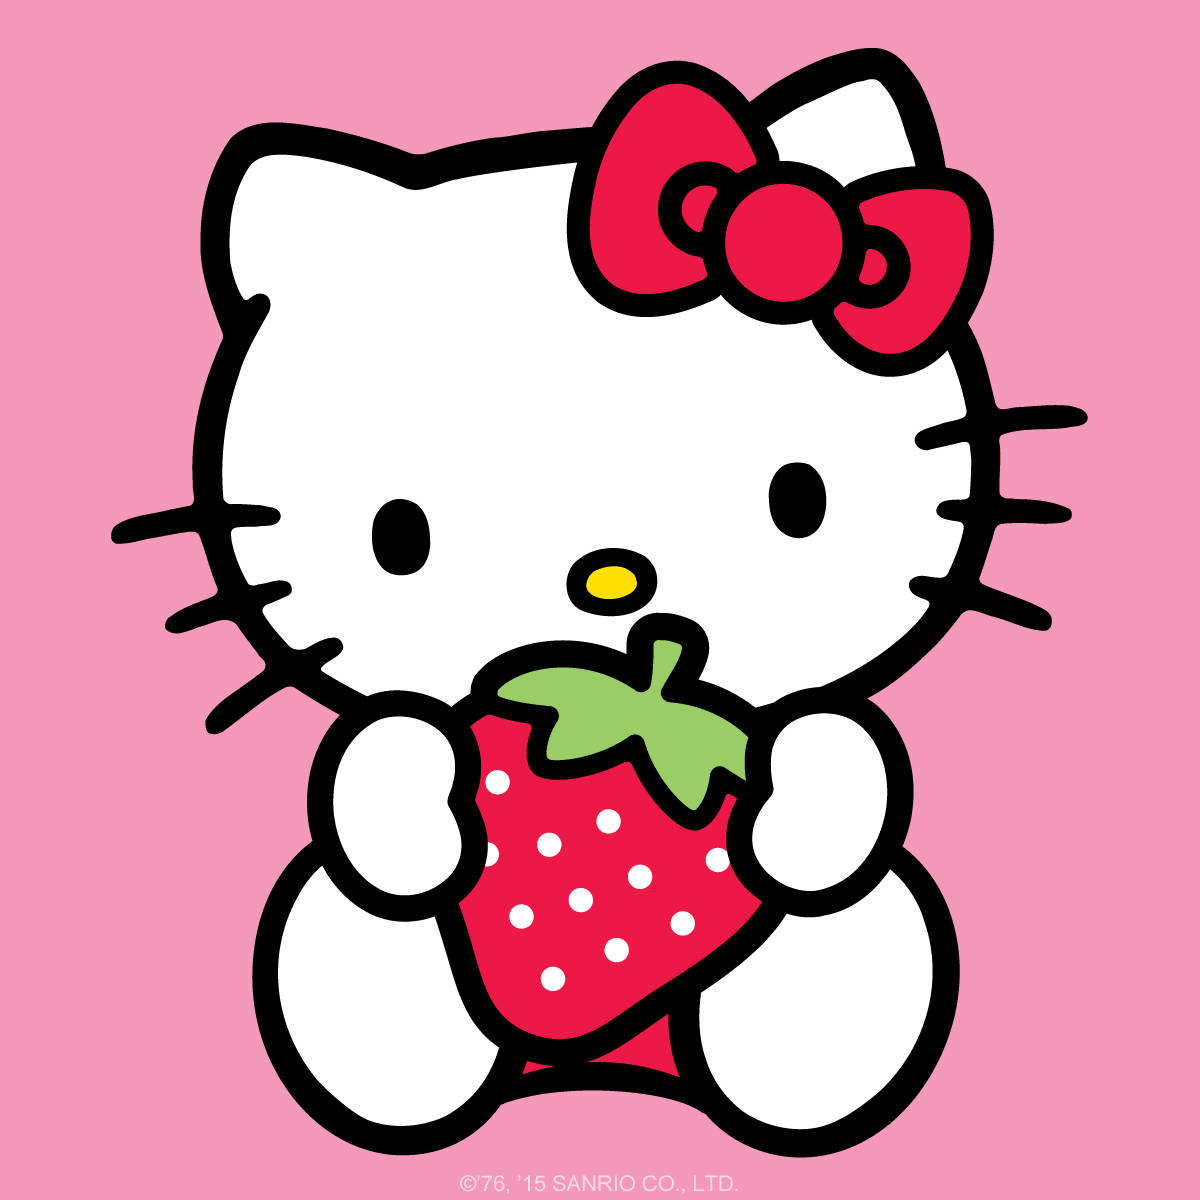 Strawberry Cartoon Hello Kitty PFP Wallpaper